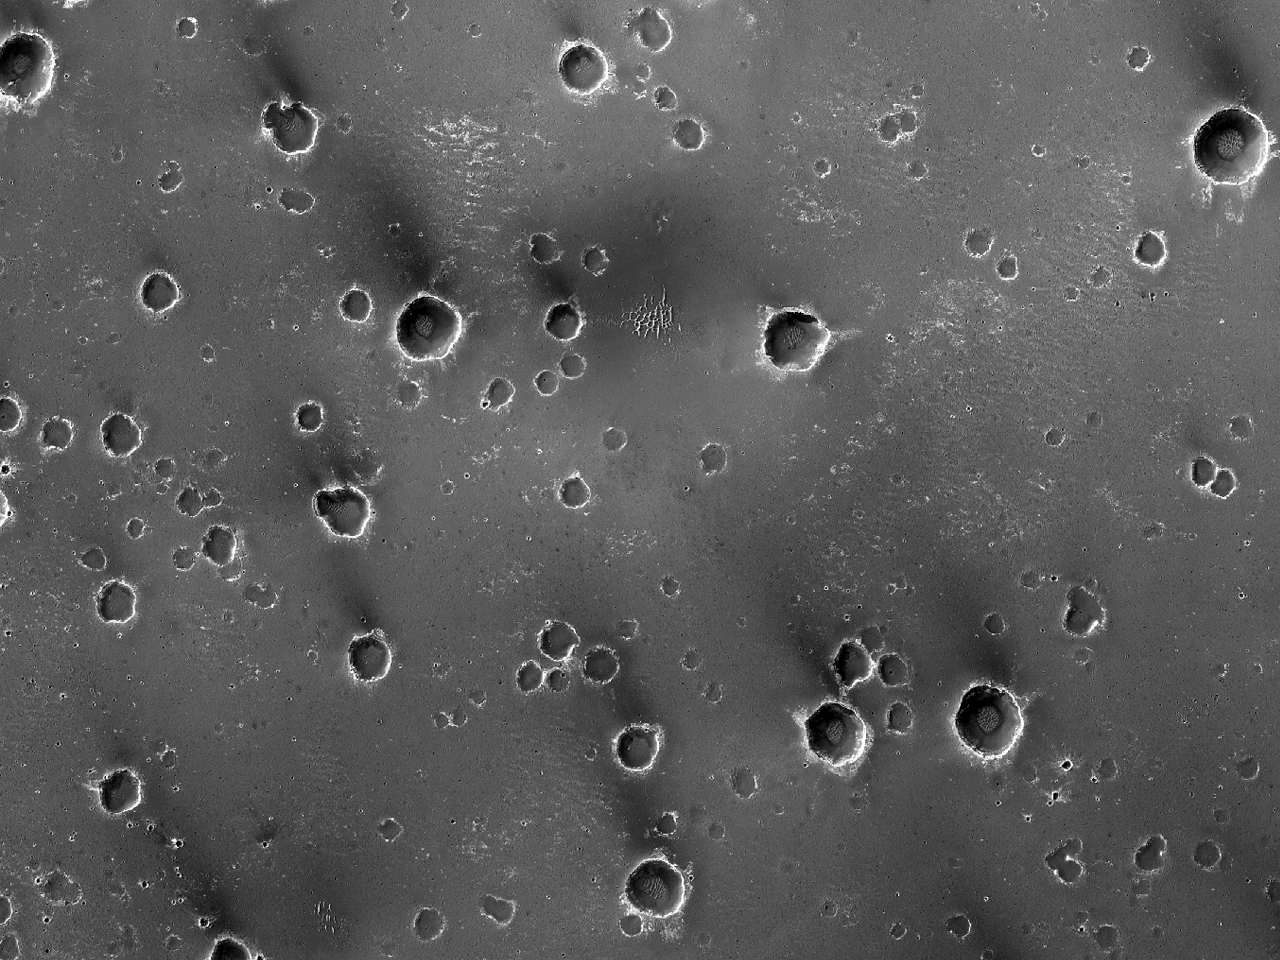 Crateres in Meridiani Planum